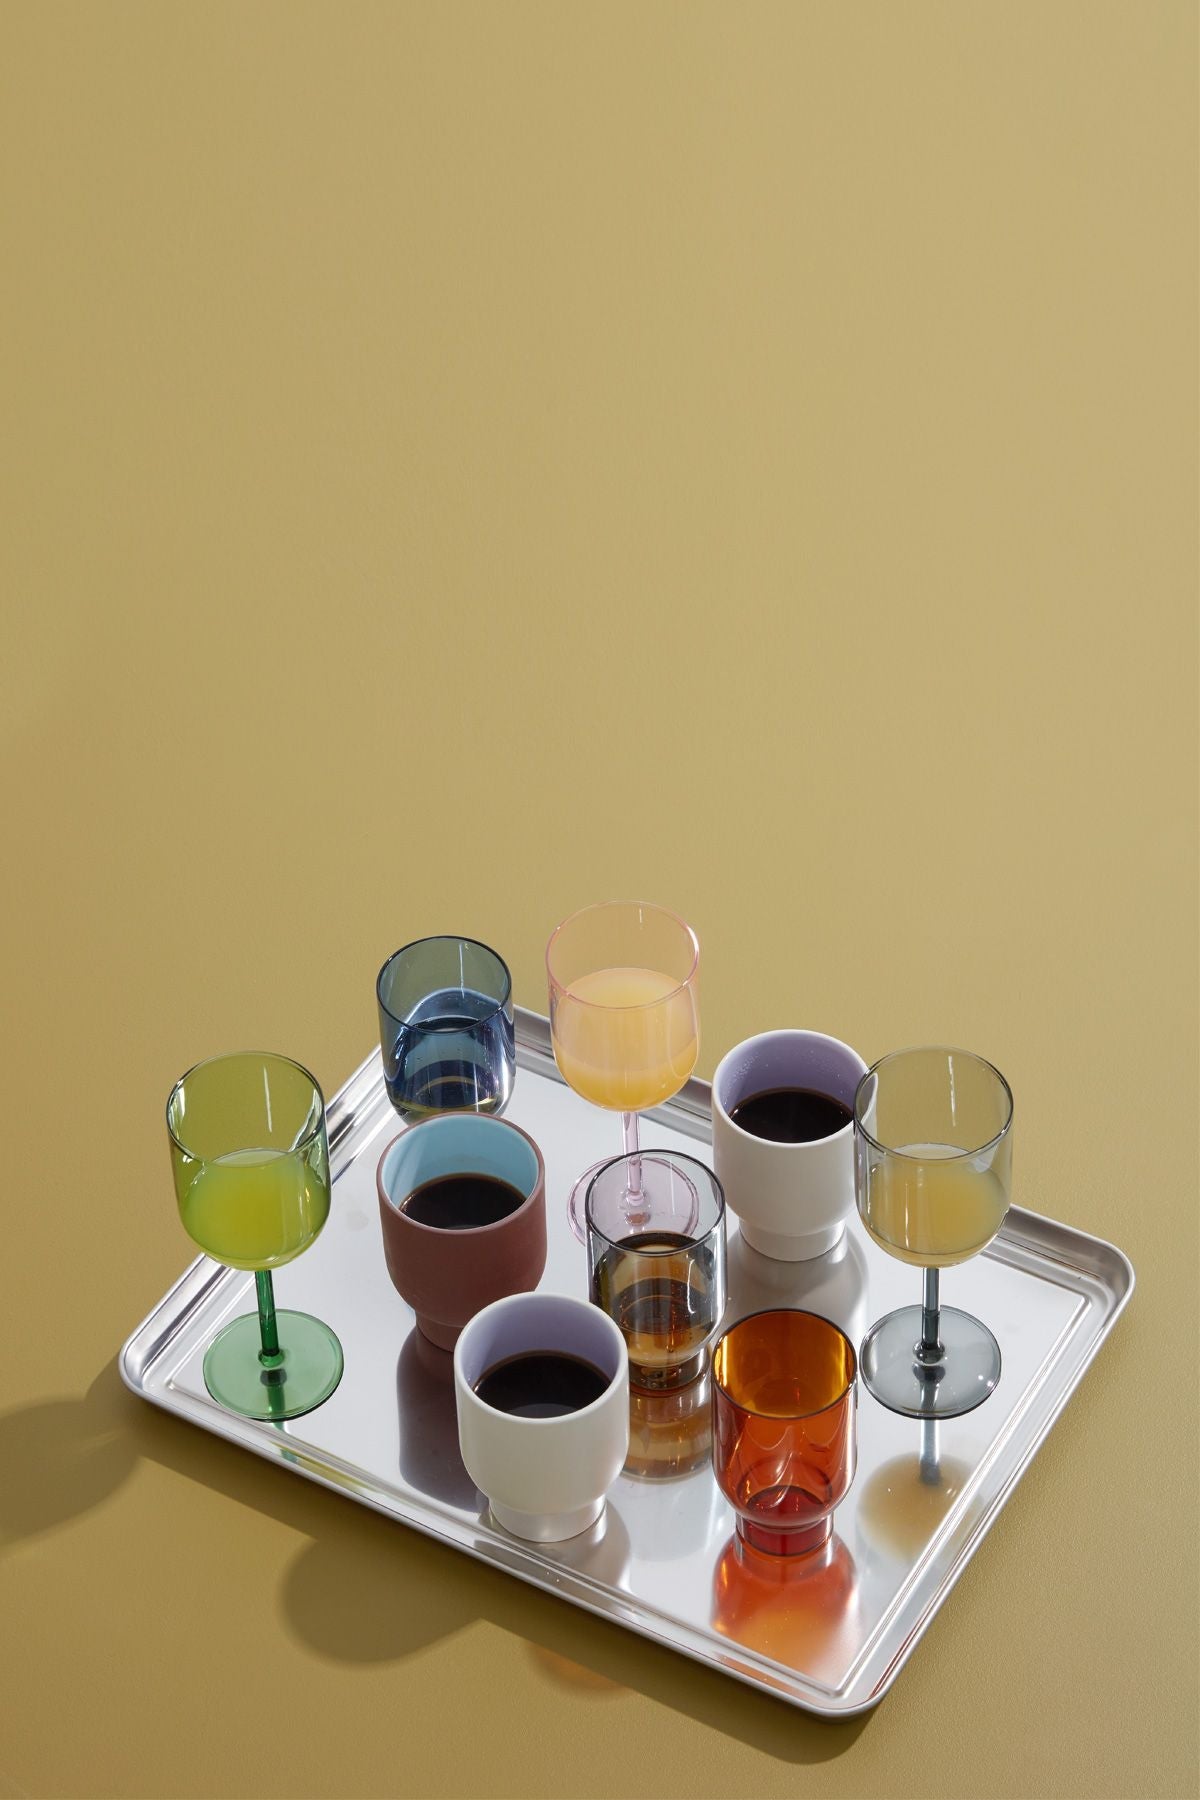 Studio About glasvareresæt med 2 vandbriller, grønt